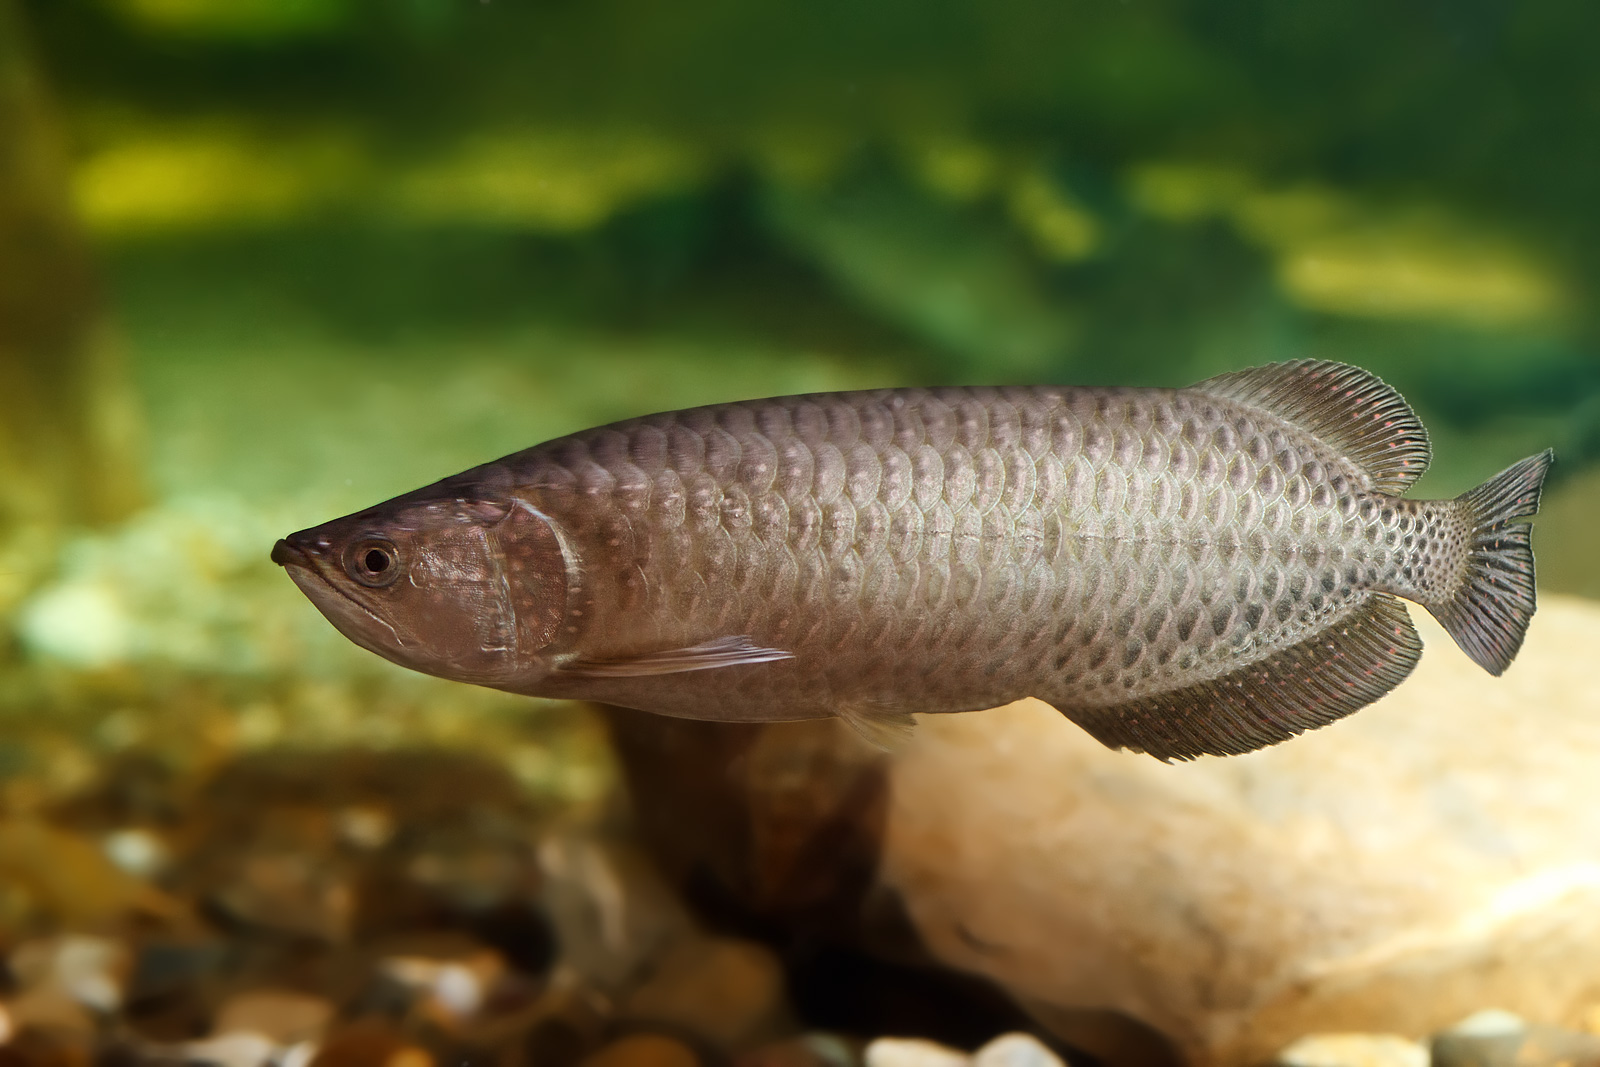 ノーザンバラムンディーを混泳させたい人へ 混泳させるときの注意点を紹介 アロワナや古代魚の飼育方法を紹介するブログ